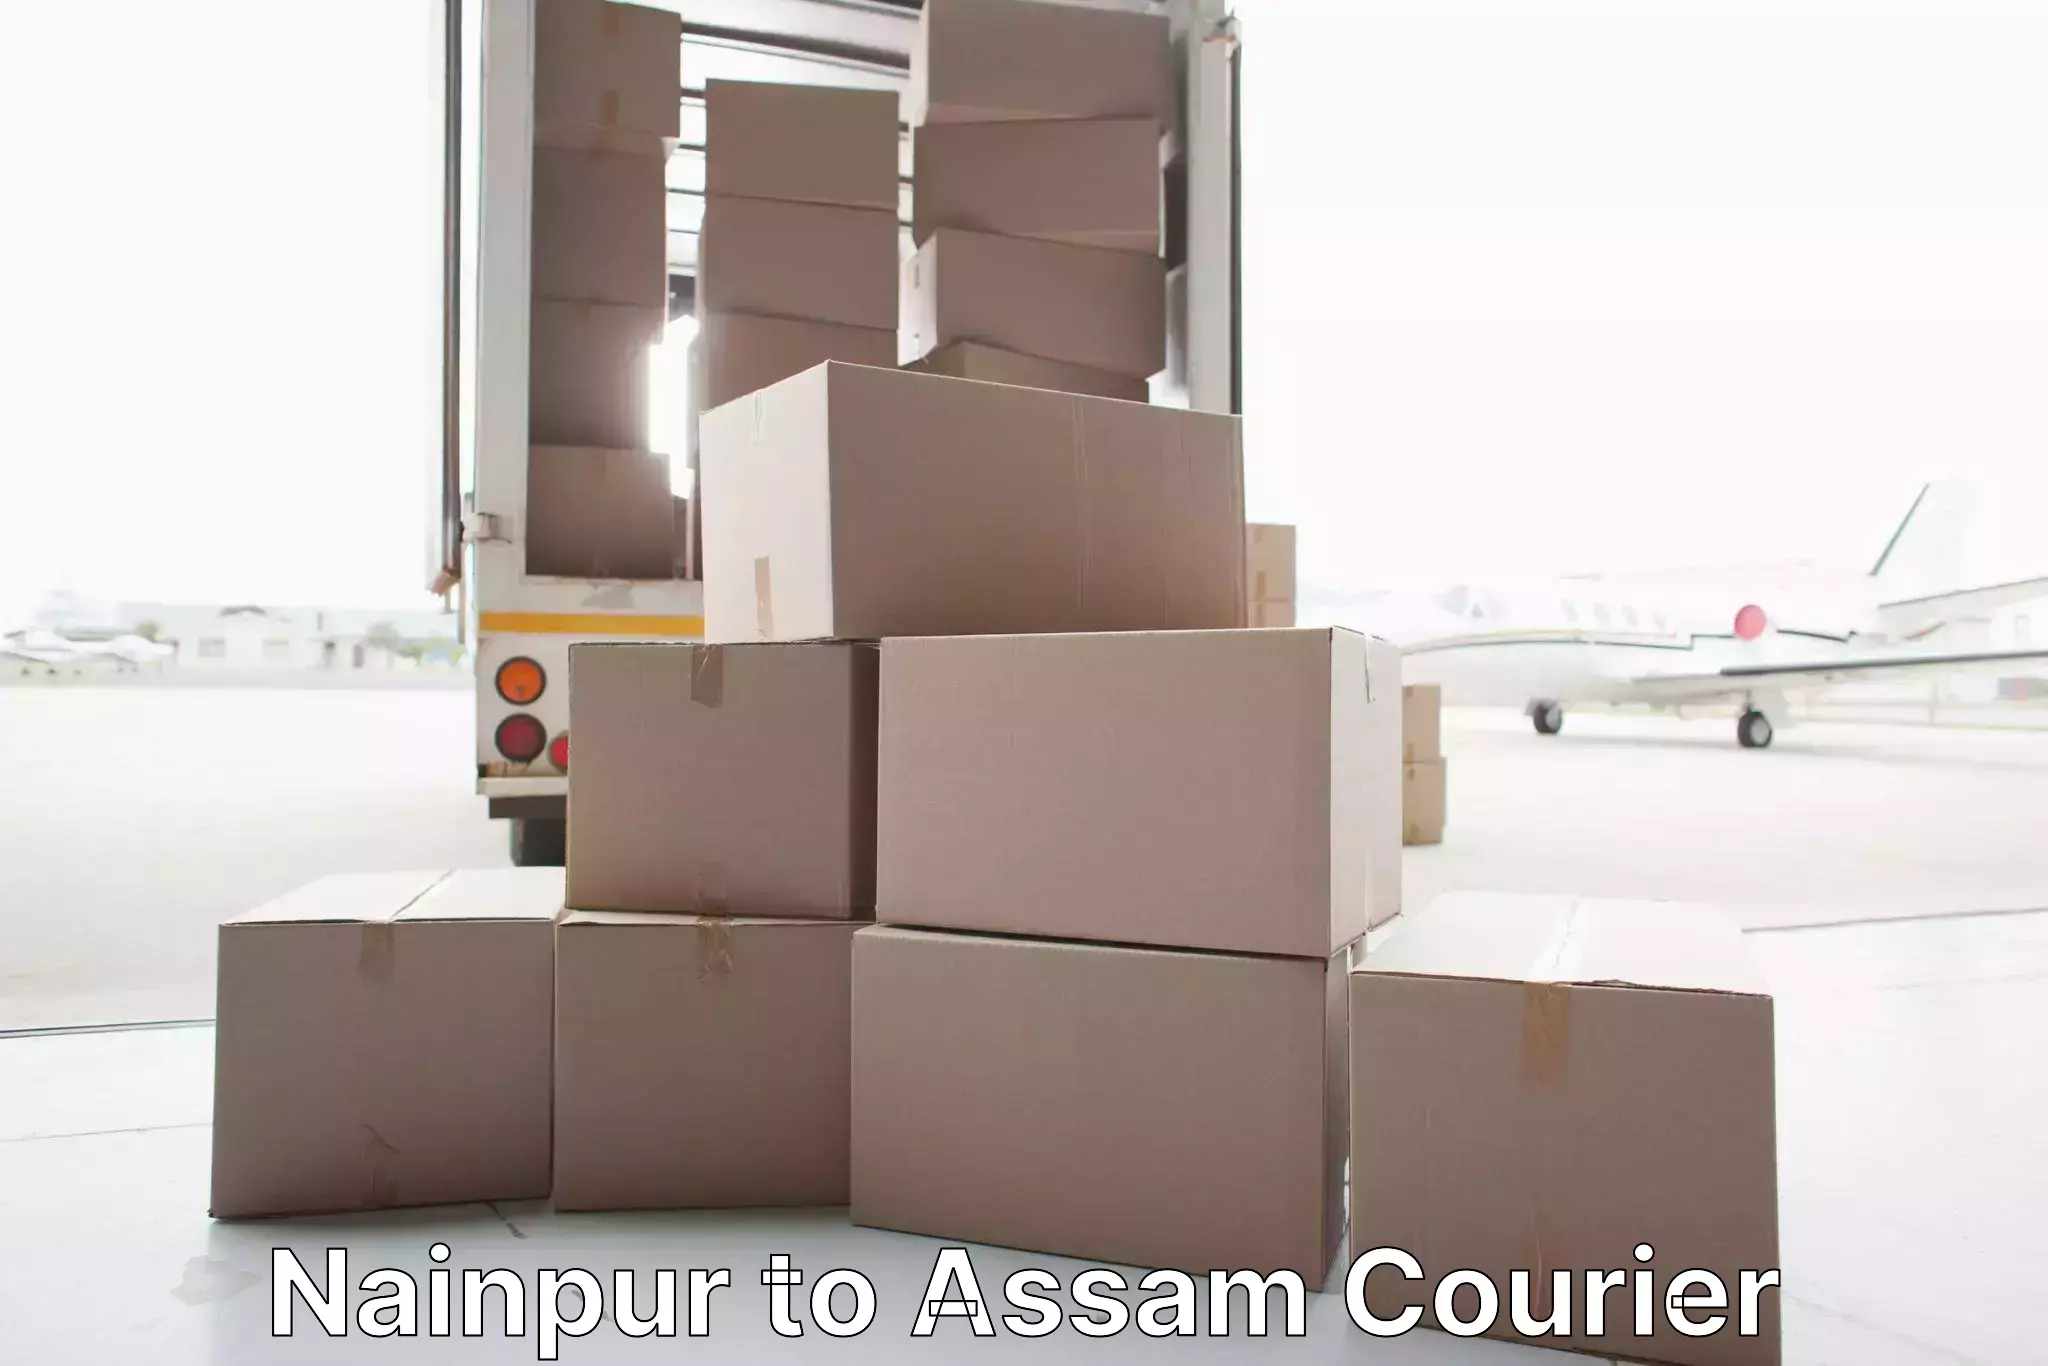 Furniture moving plans Nainpur to Kalgachia